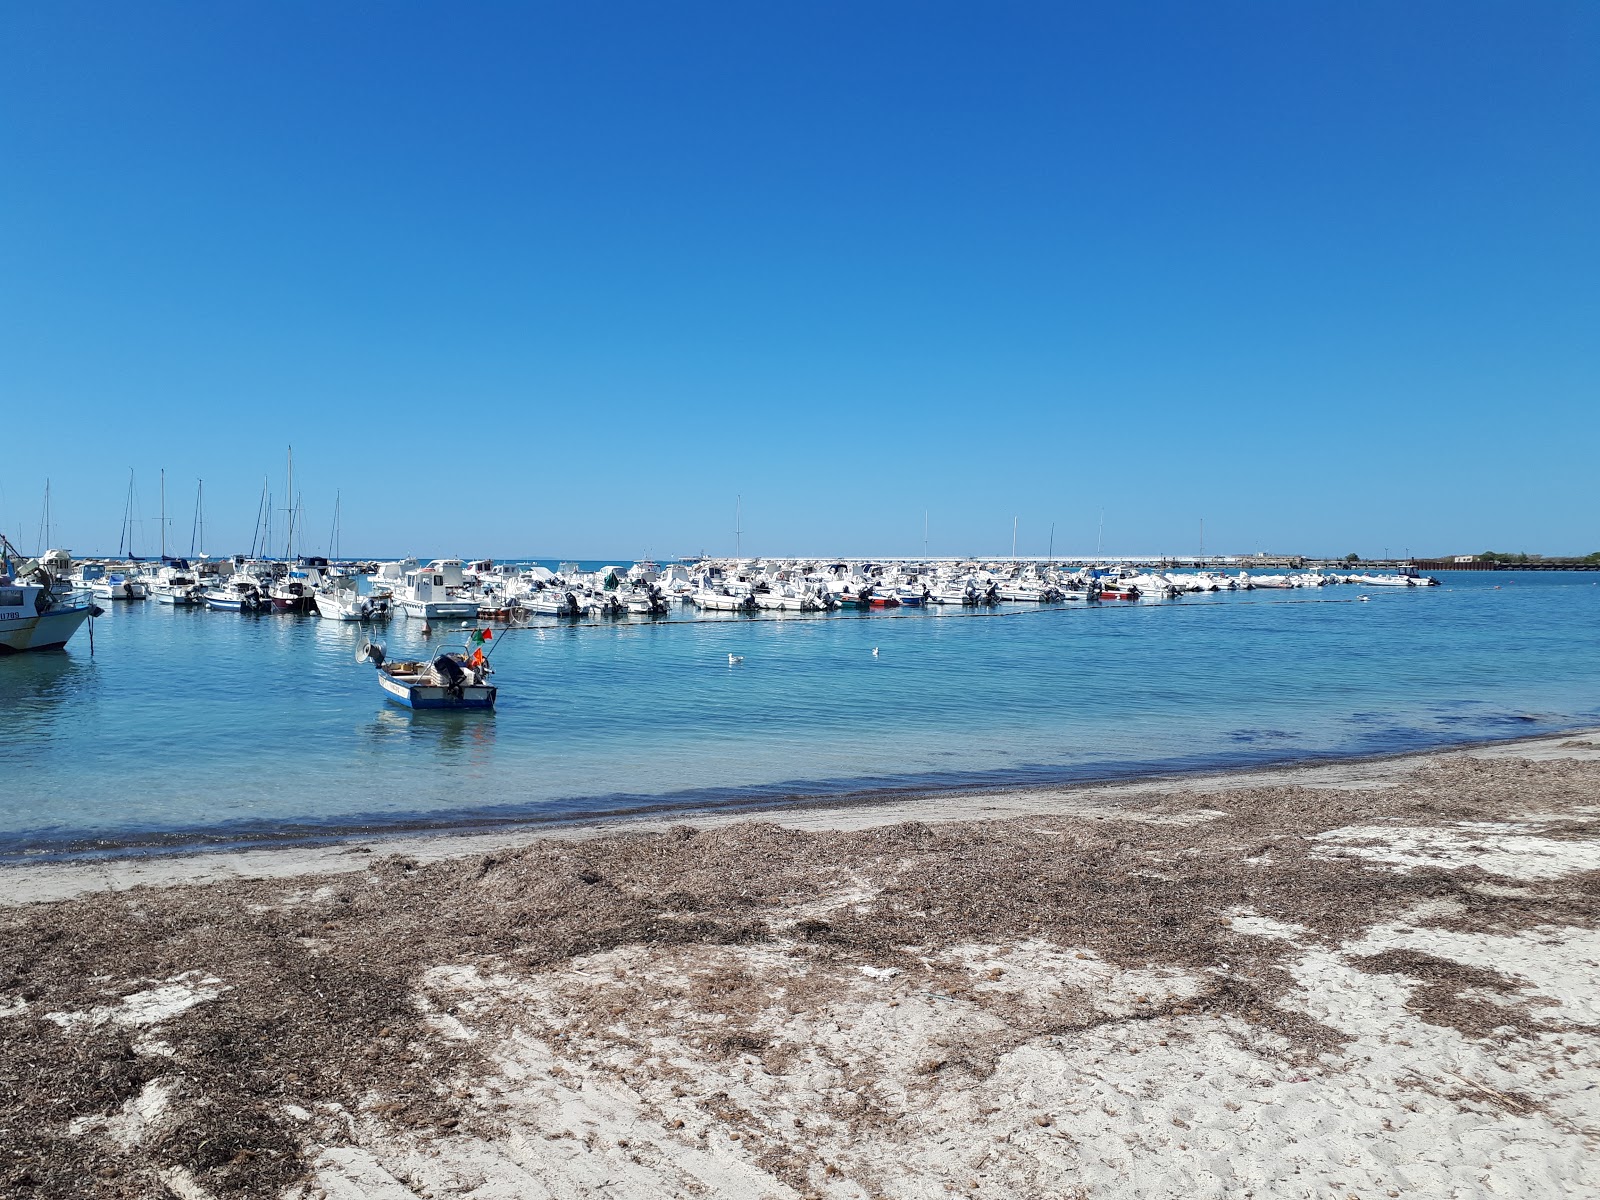 Zdjęcie Spiaggia Di Domani z powierzchnią niebieska woda